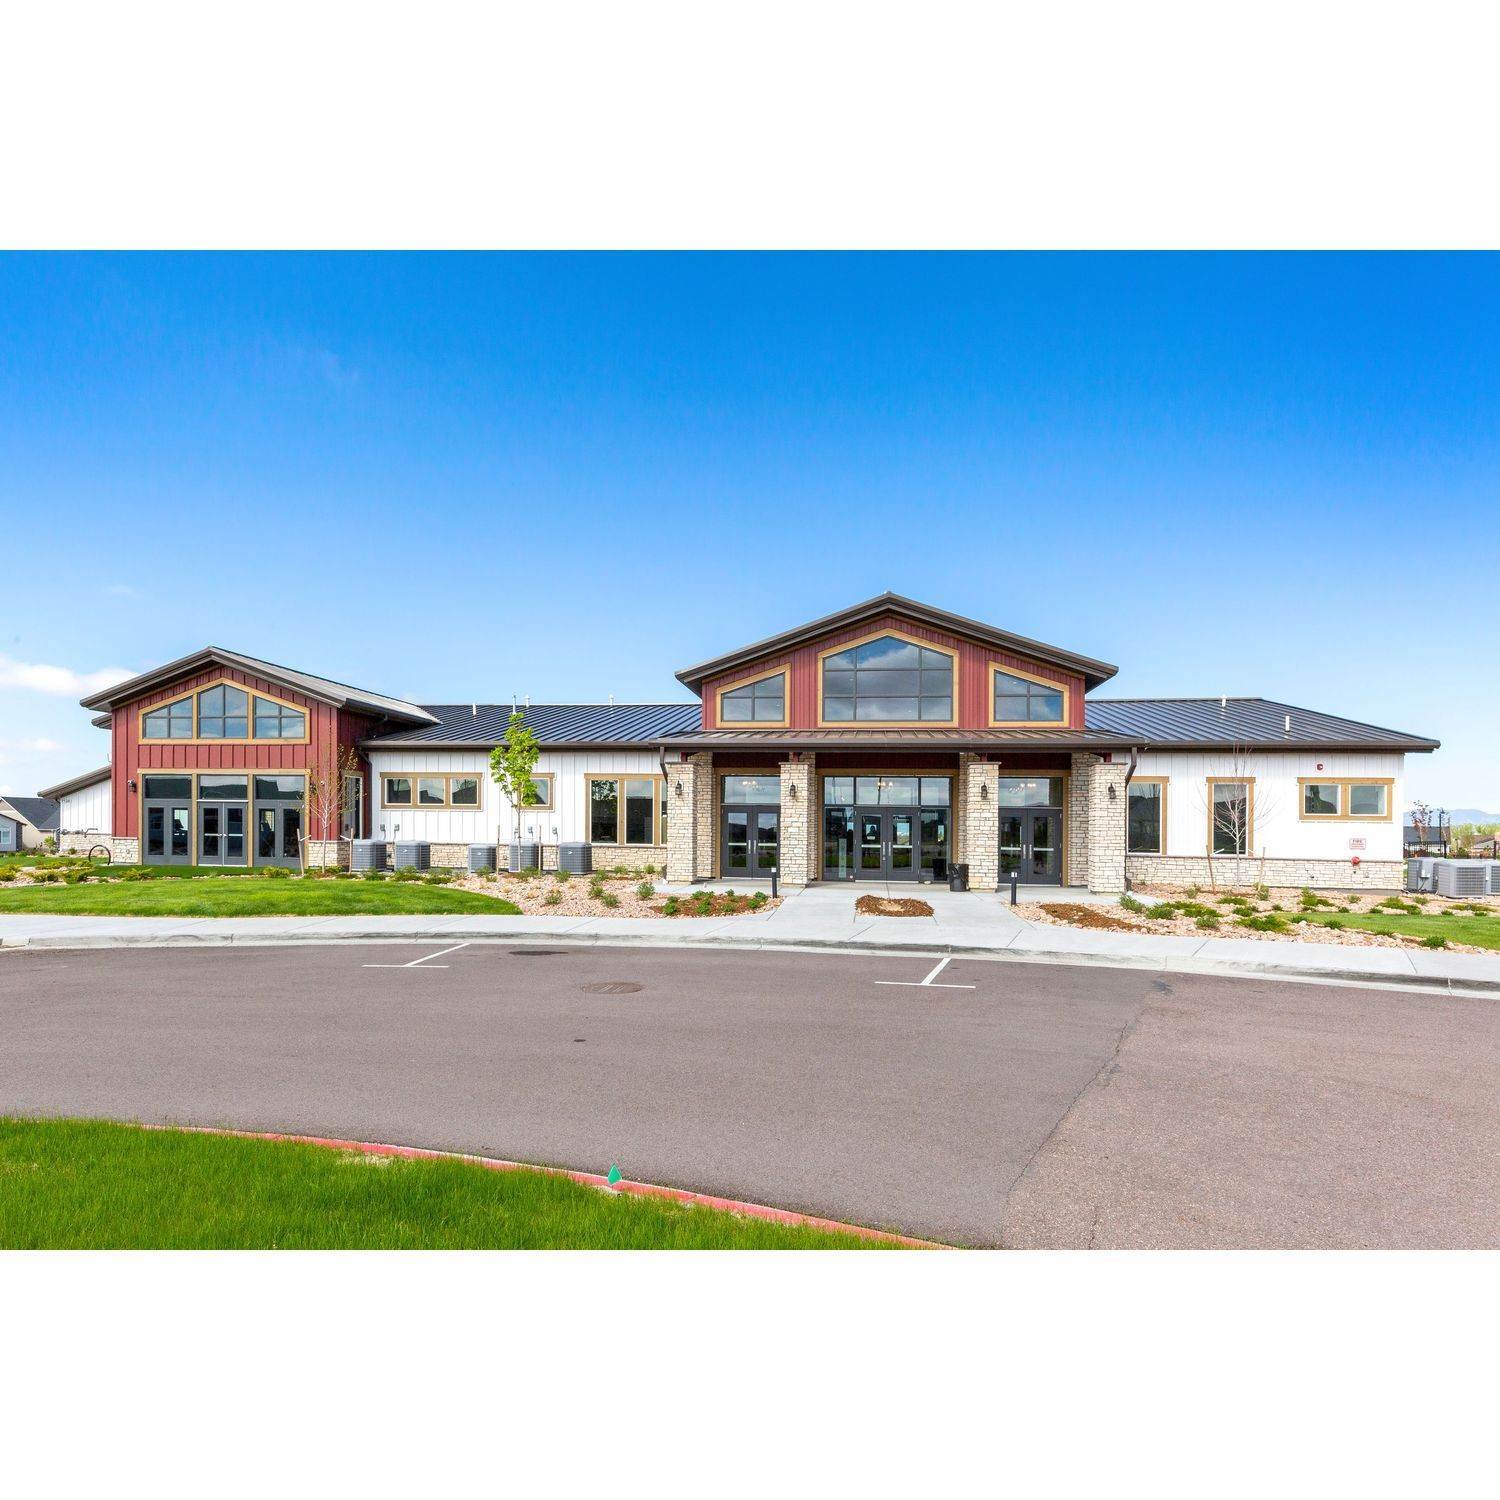 16. The Retreat in Banning Lewis Ranch edificio en 9158 Braemore Heights, Colorado Springs, CO 80927